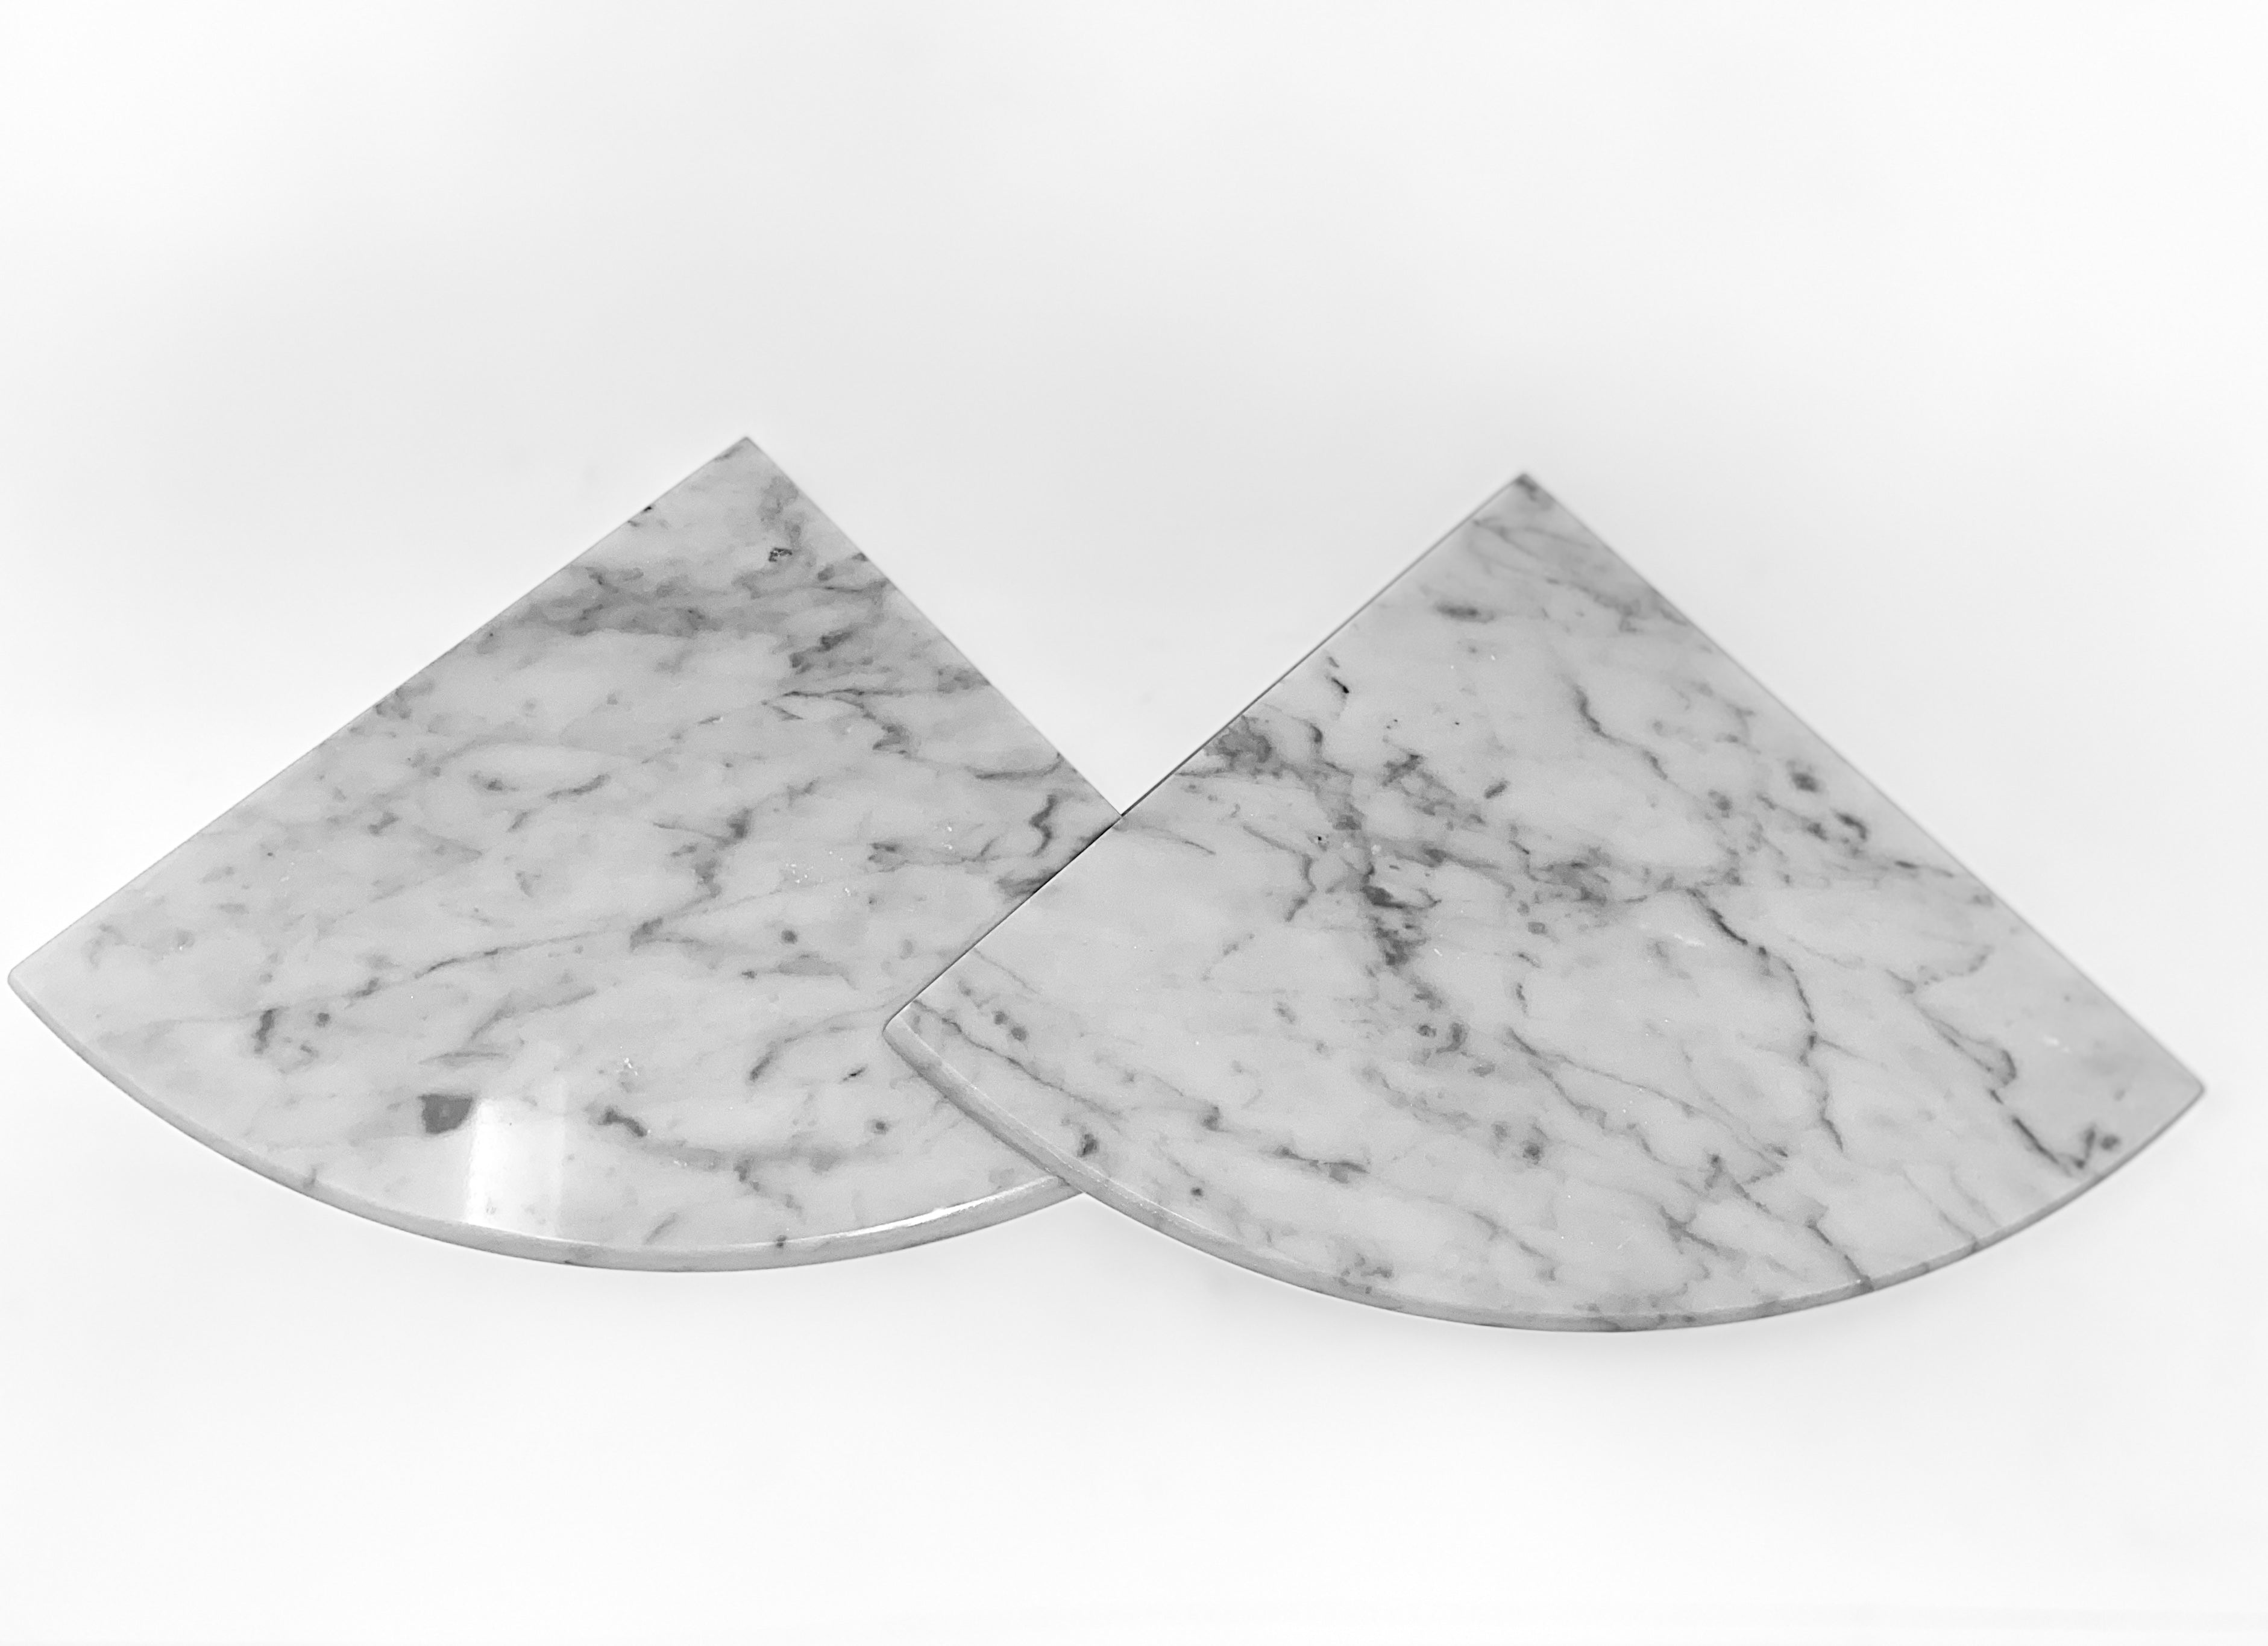 Tenedos Marble Corner Shower Shelf Stone White Bianco Carrara Stone Two Sides Polished 9" x 9" Rounded Front